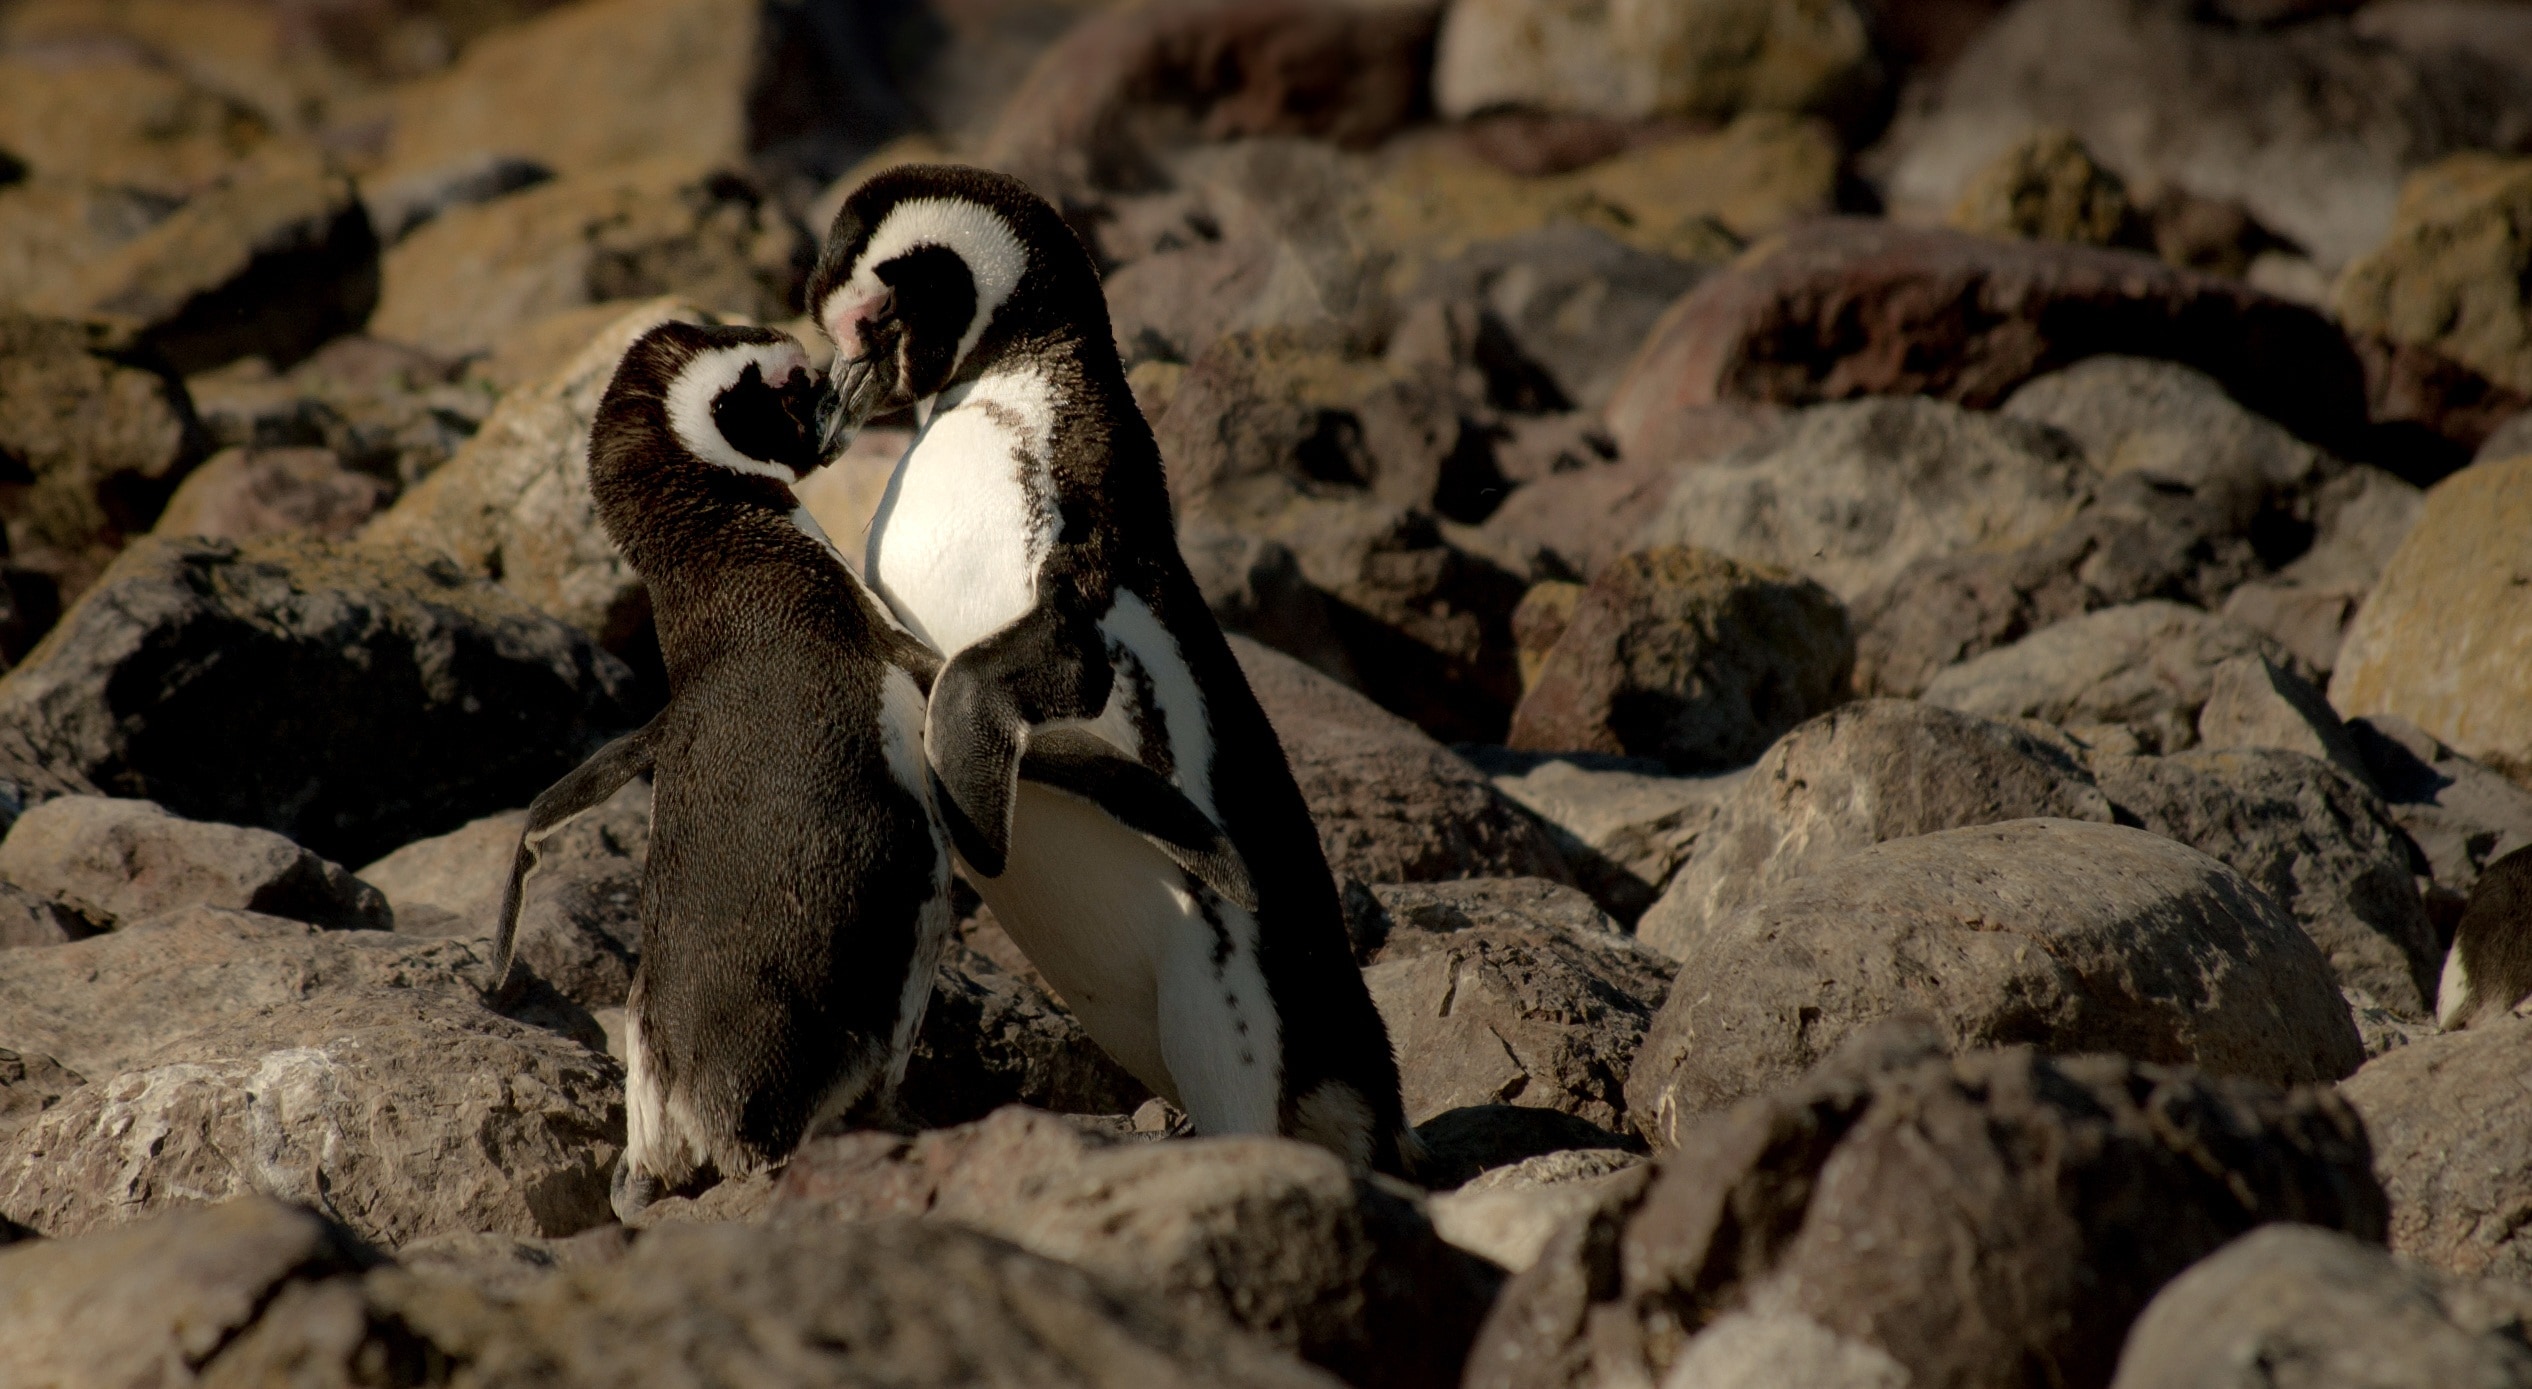 2 black and white penguins